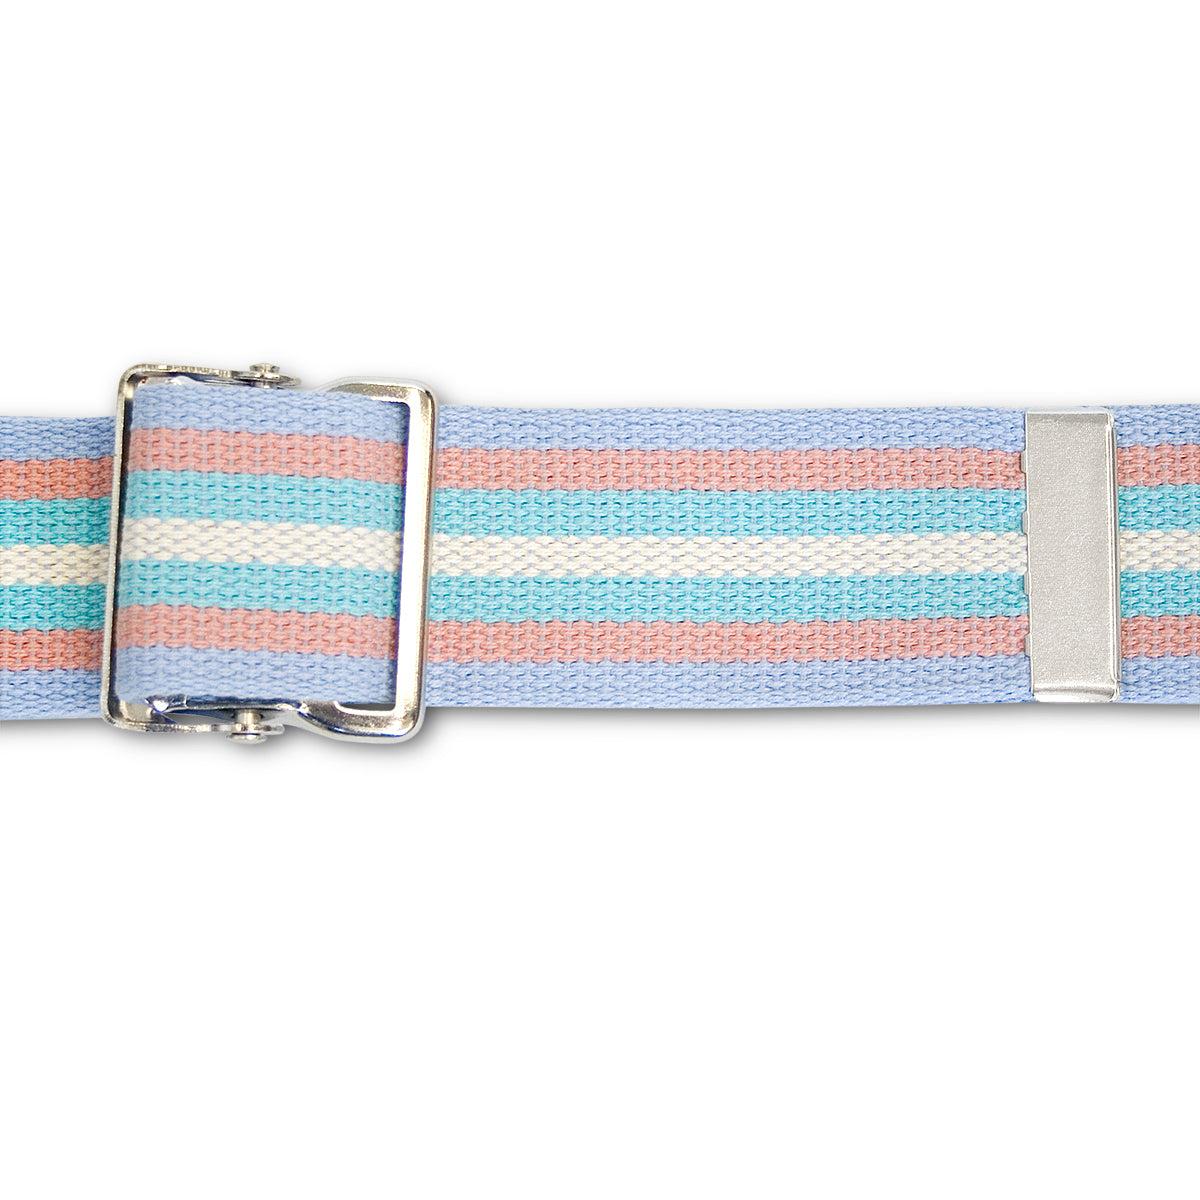 Multi-Color Gait Belts, 2" x 54"